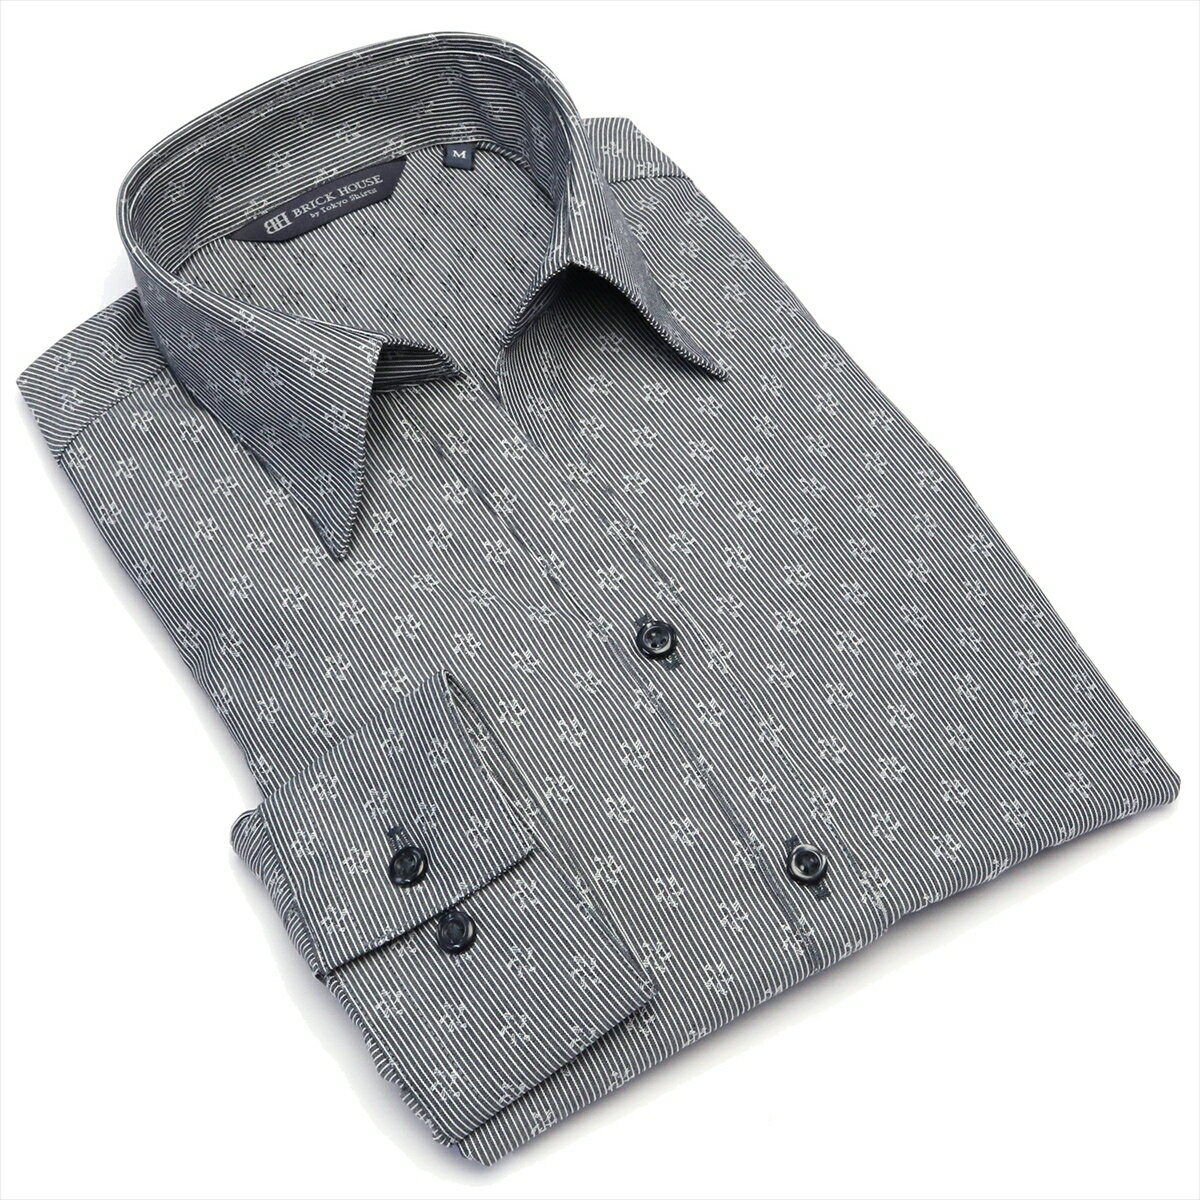  スキッパー 長袖 形態安定 レディースシャツ 綿100%